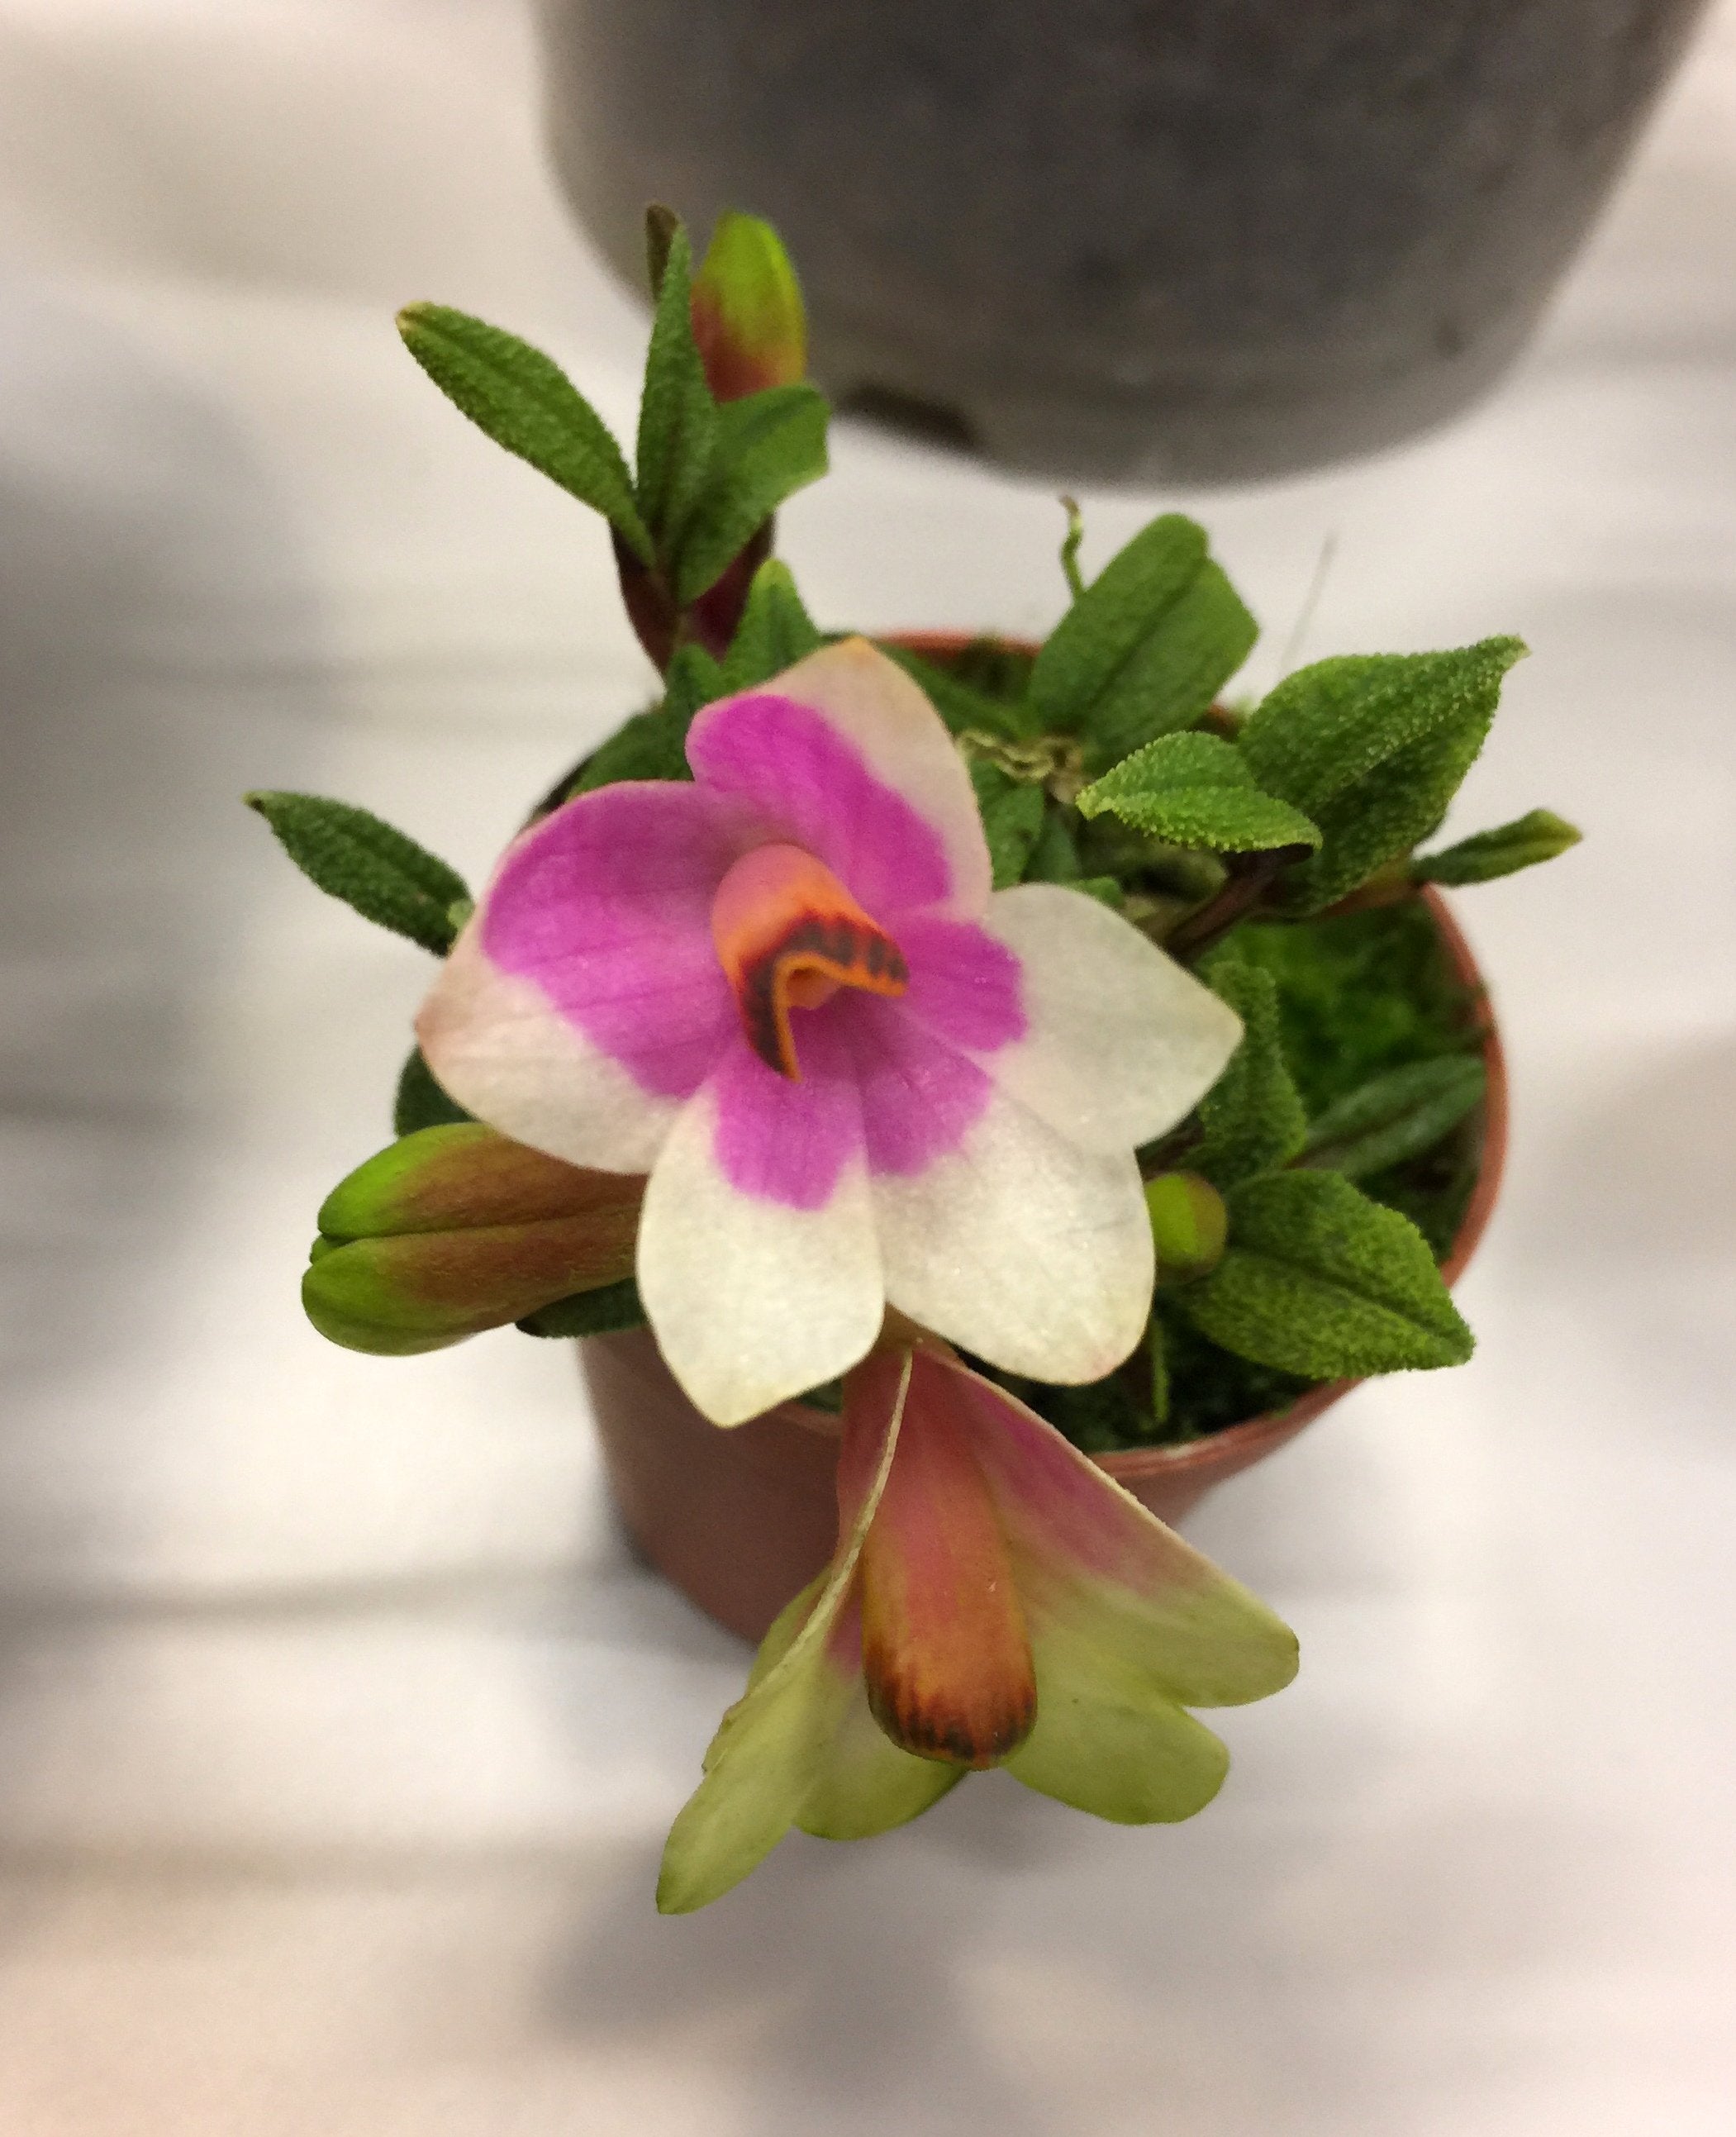 Dendrobium cuthbersonii "Pink-White" "Big"